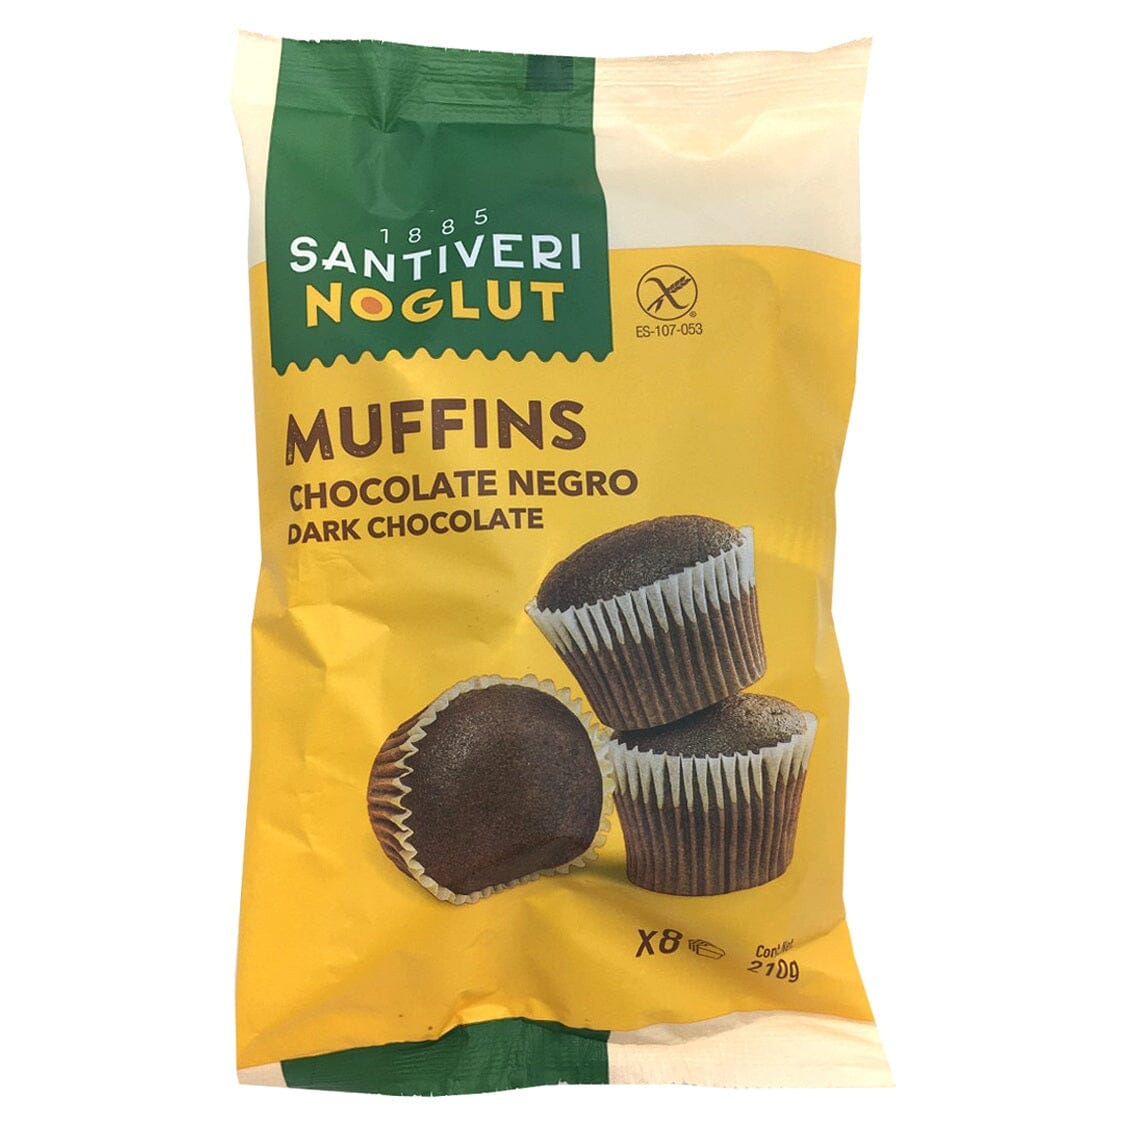 Muffins Chocolate Negro Noglut 200 gr | Santiveri - Dietetica Ferrer